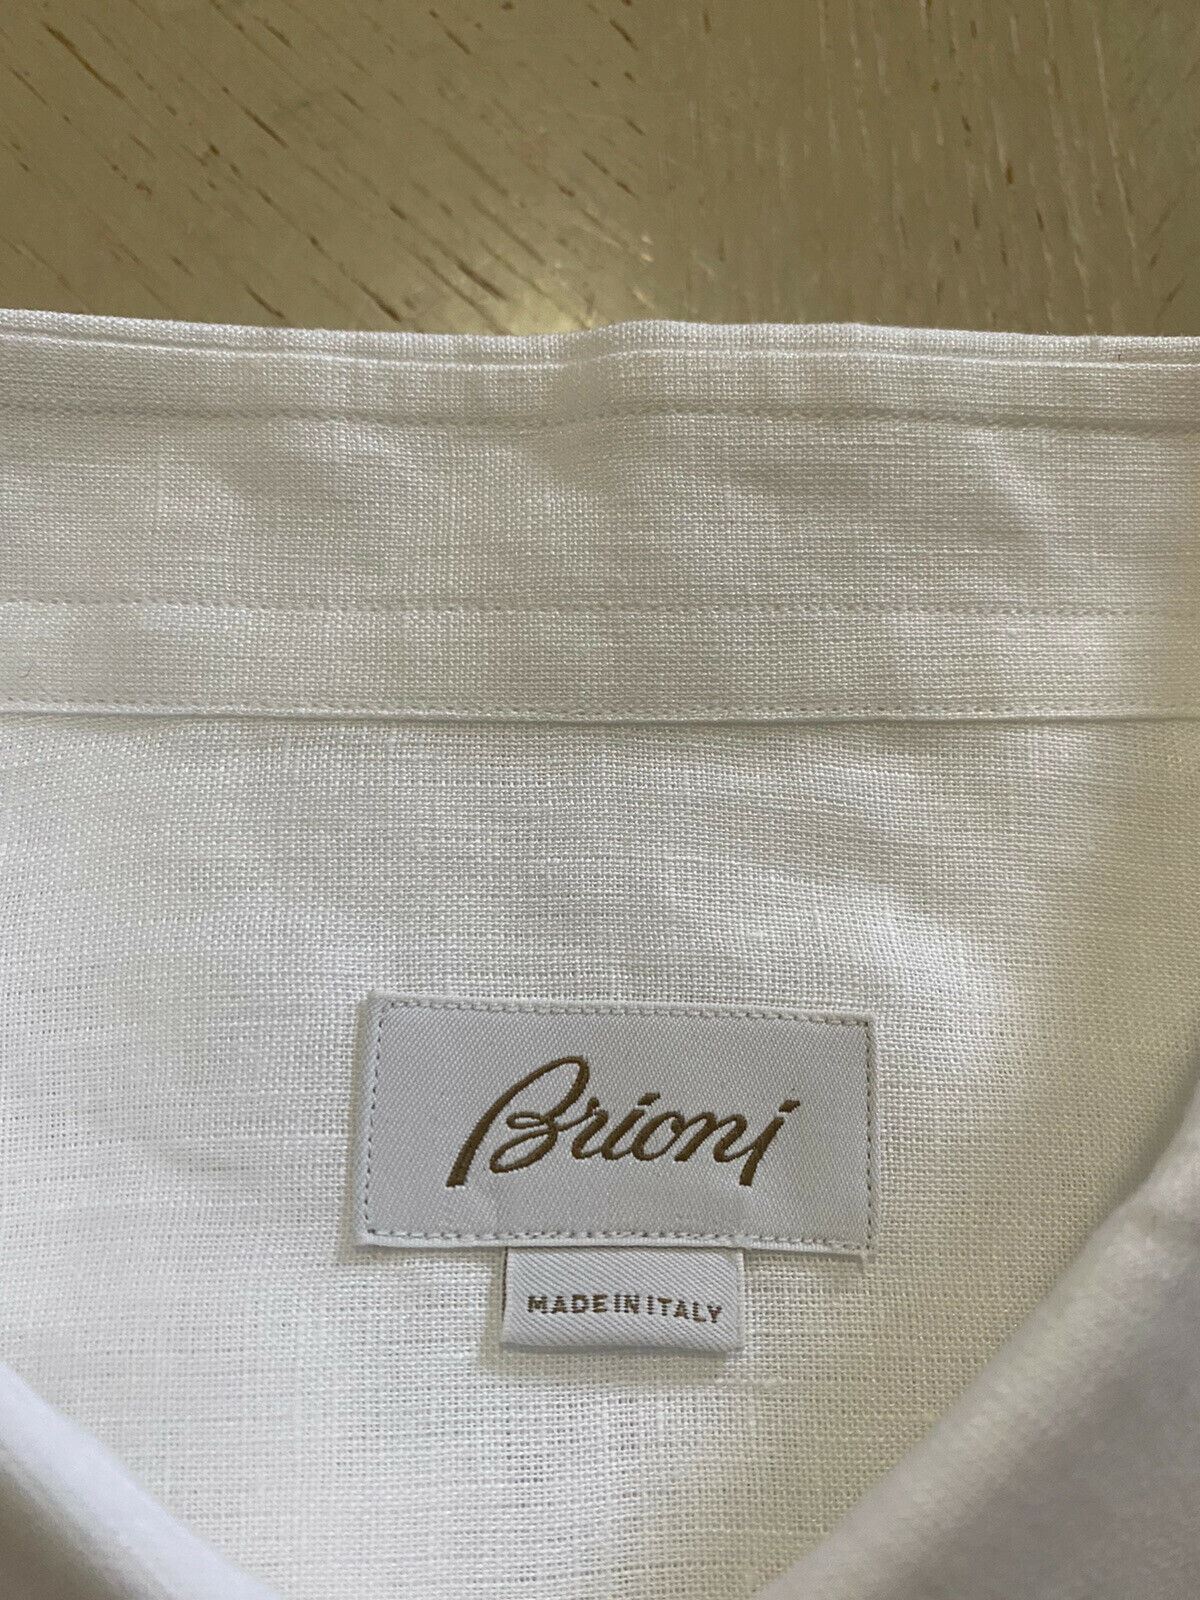 Neu mit Etikett: 500 $ Brioni Herren-Leinenhemd mit sortierten Ärmeln, Weiß, Größe XL, Italien